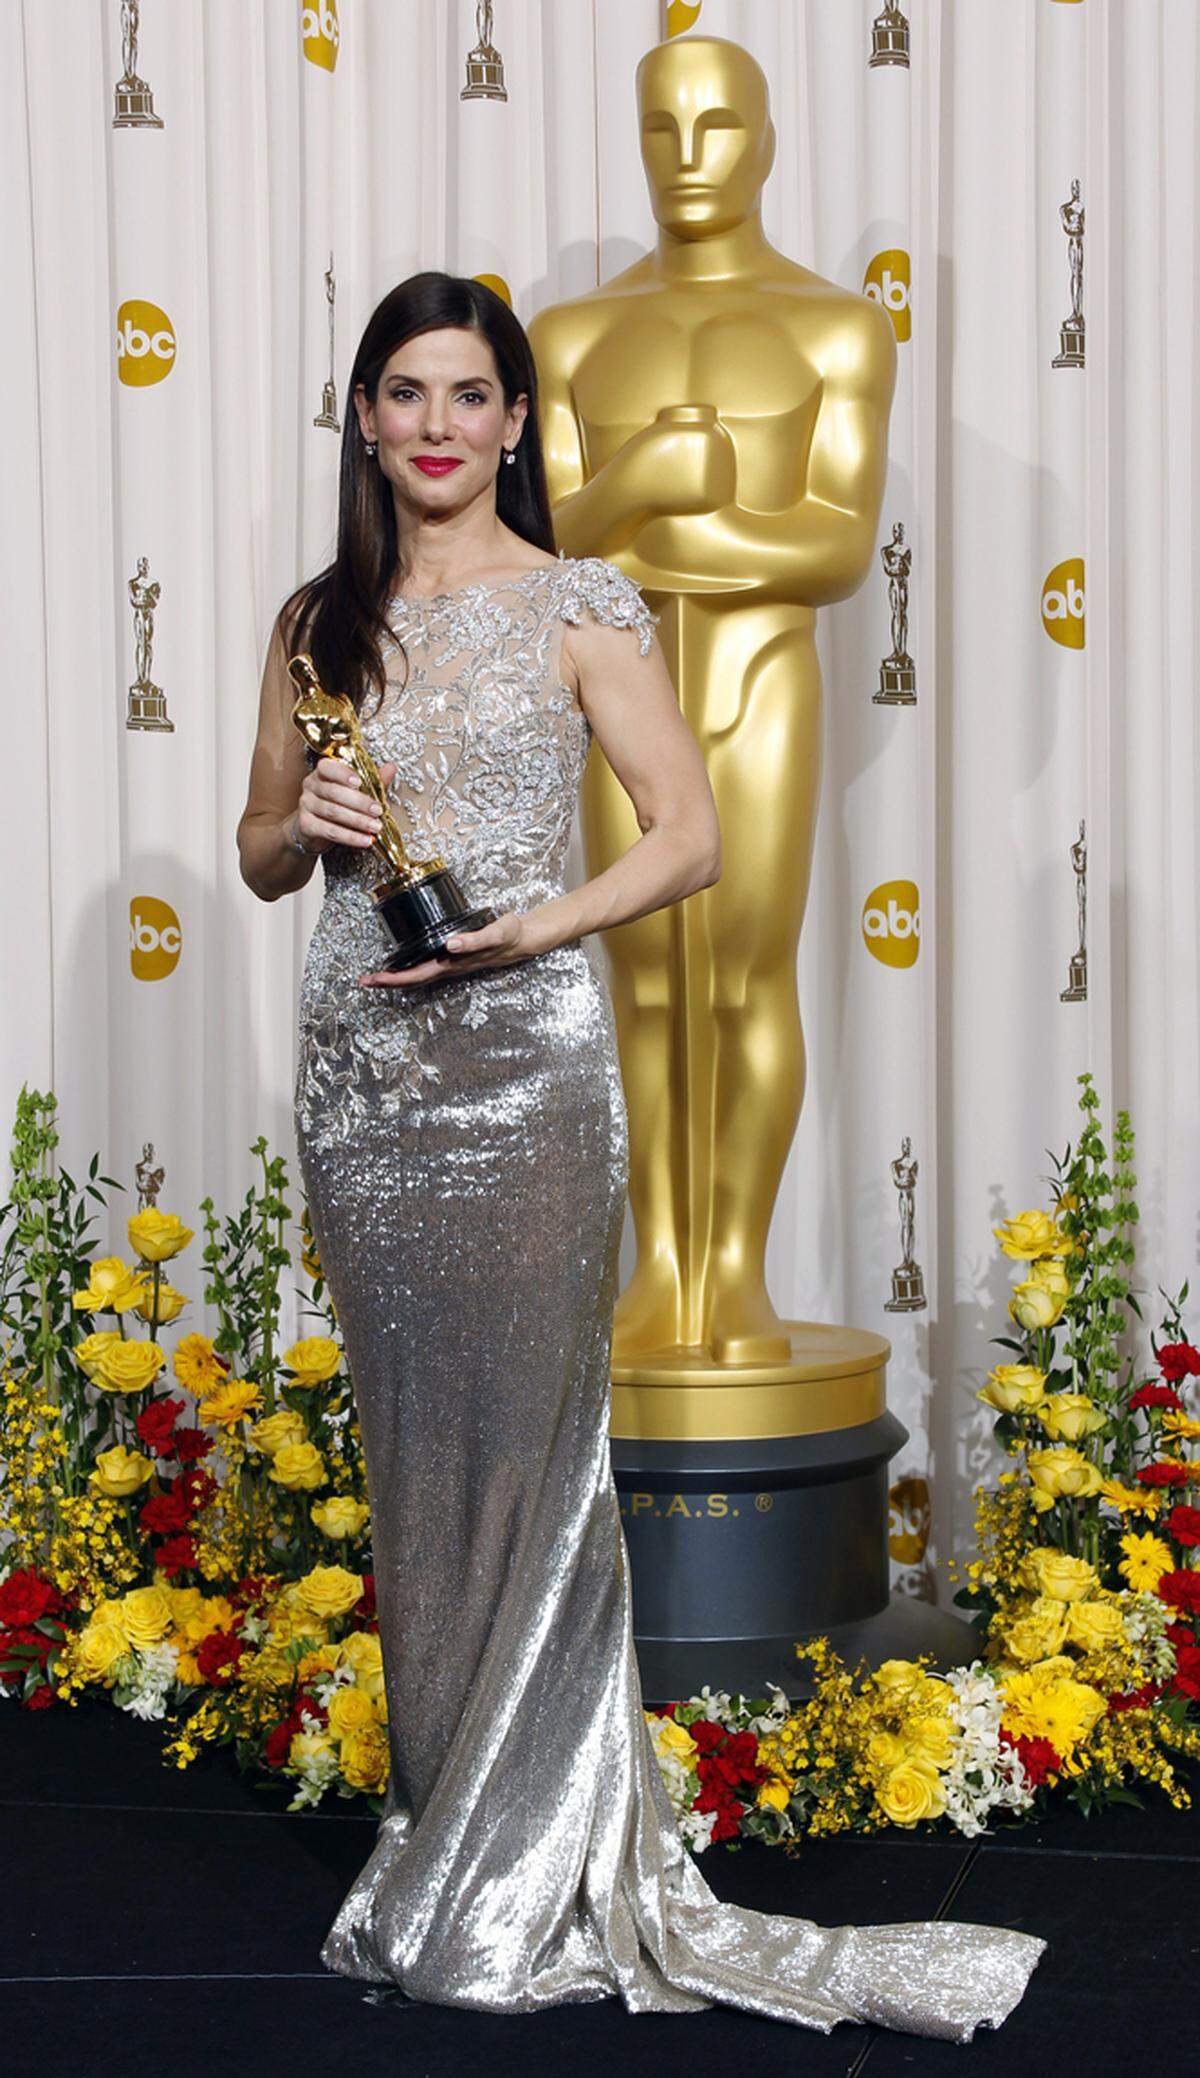  Sandra Bullock entschied sich 2010 für ein helles Kleid von Armani Privé und gewann darin den Oscar für den Film "The Blind Side".